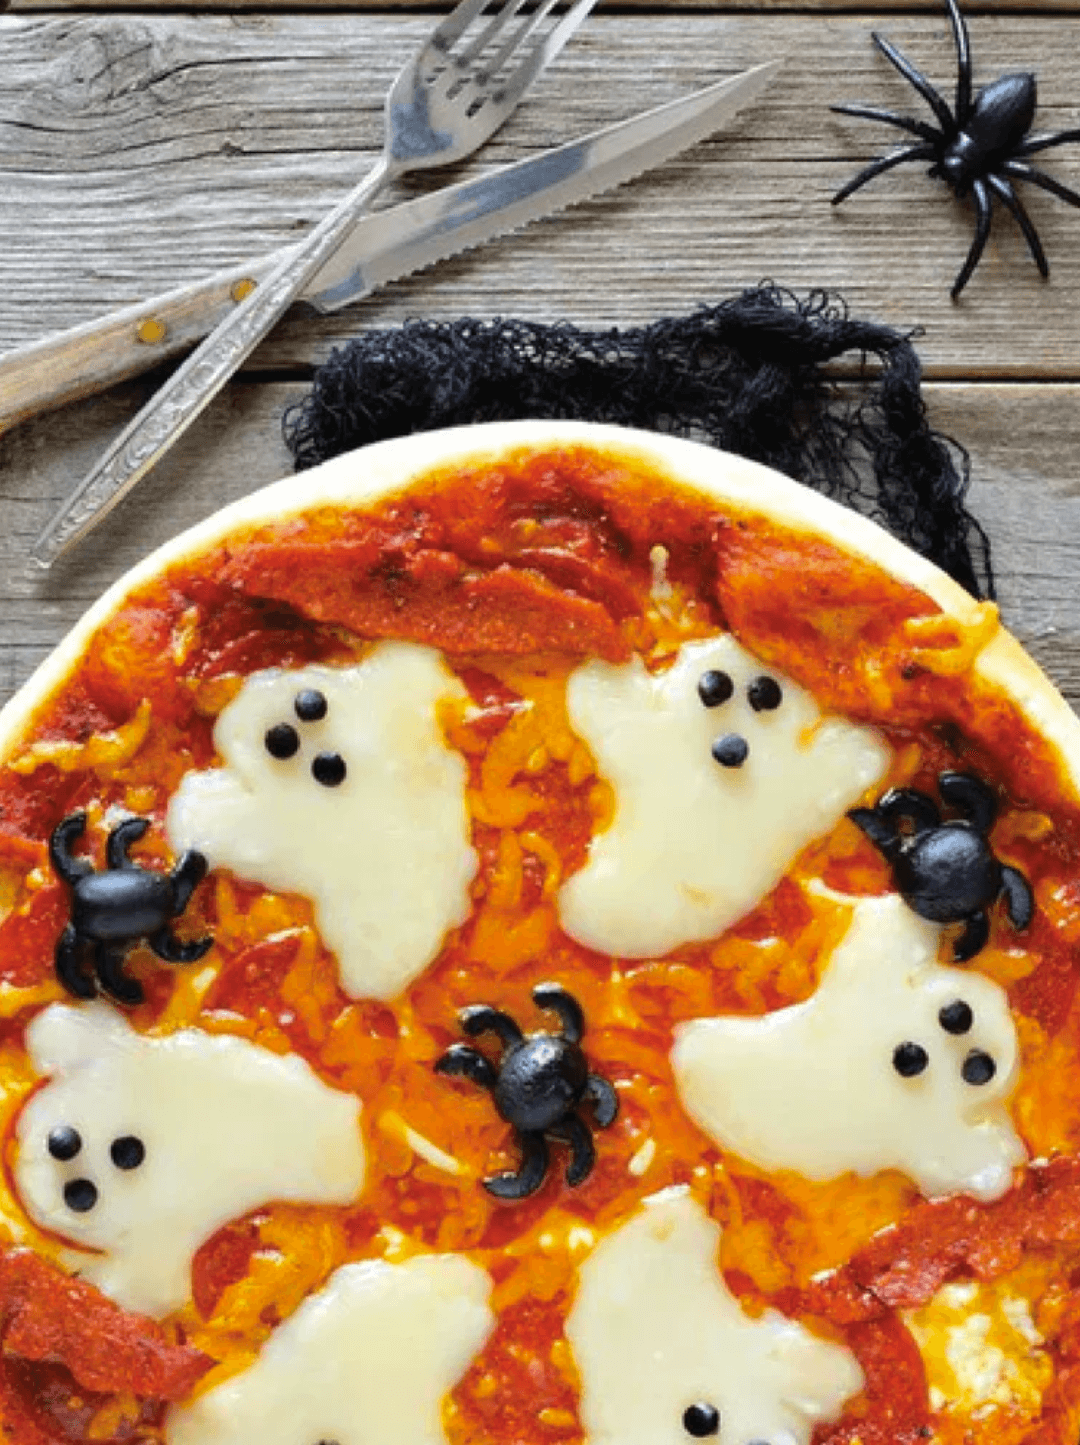 Pizza condimentada con O-Live & Co adornada para Halloween, con el queso con forma de fantasma y las aceitunas a modo de arañas.